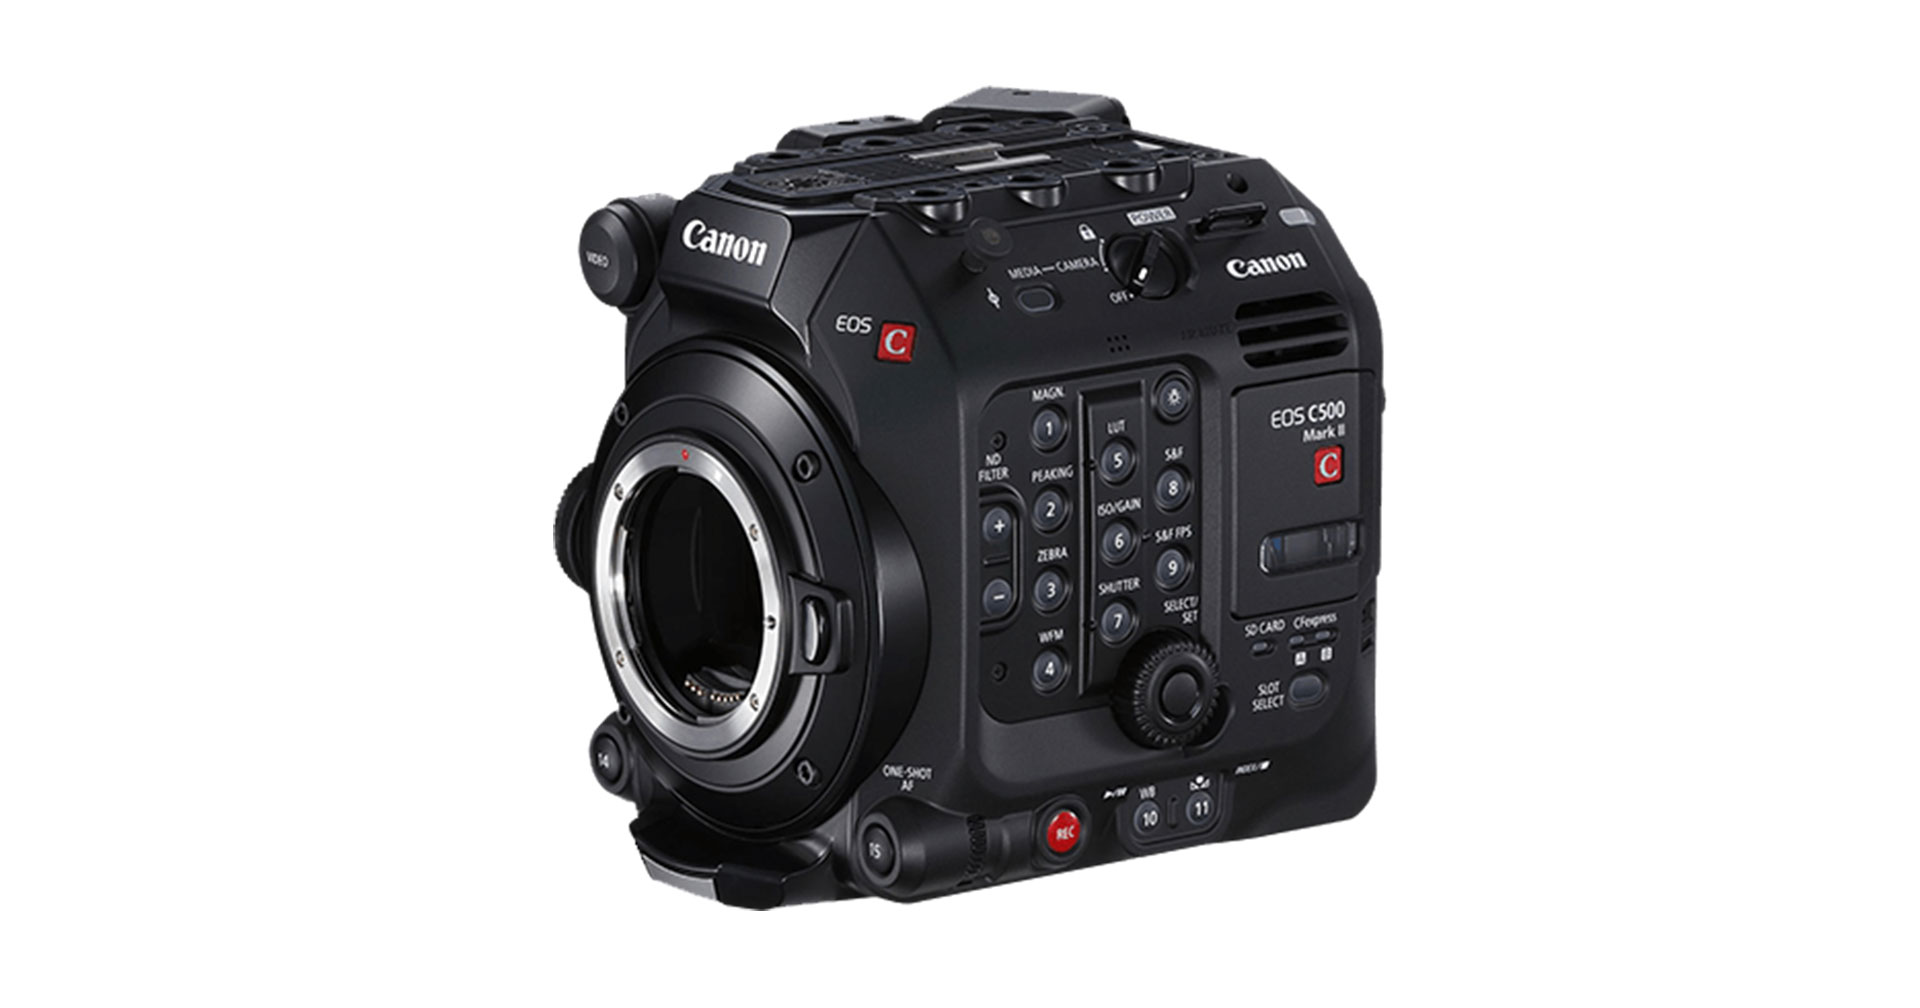 ข่าวลือ Canon เตรียมเปิดตัวกล้อง Cinema EOS รุ่นใหม่ ถึง 3 ตัว เร็ว ๆ นี้